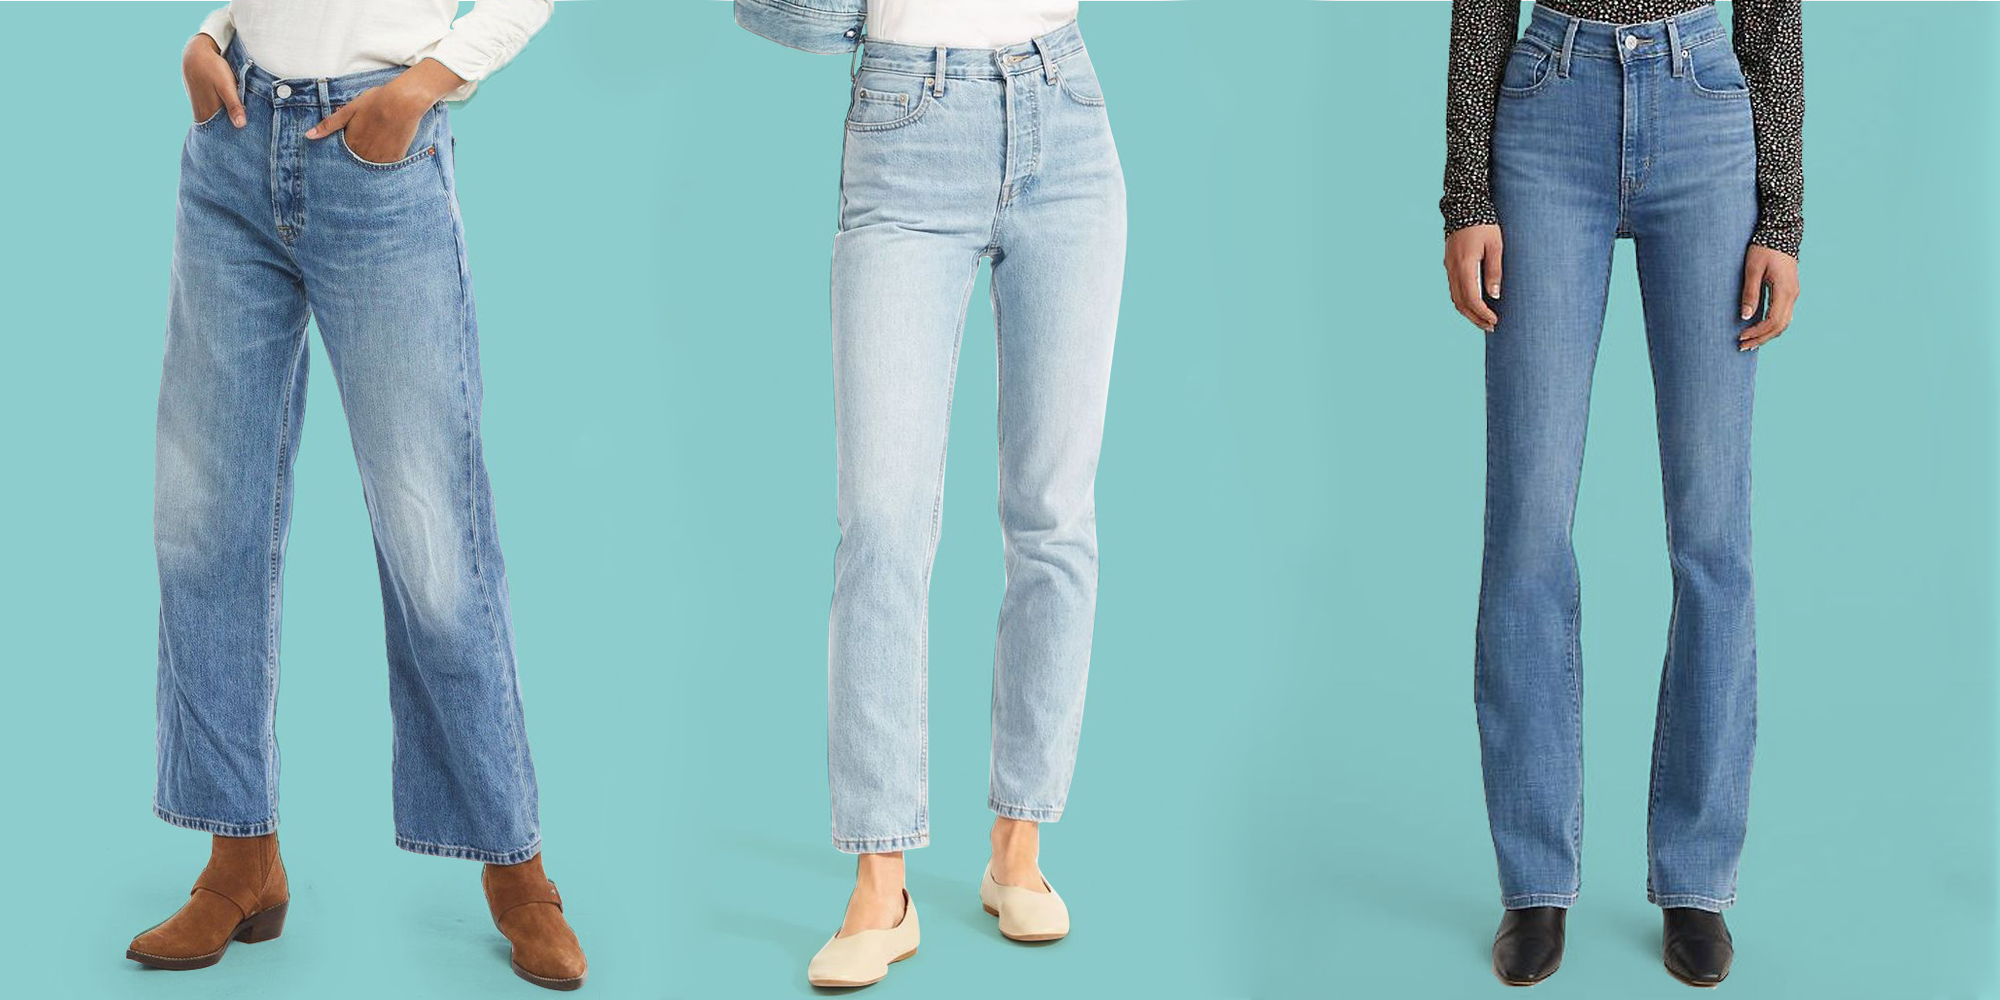 Best Women S Jeans Brands 2018 | Premium denim jeans, Jeans brands, Stylish  jeans for men